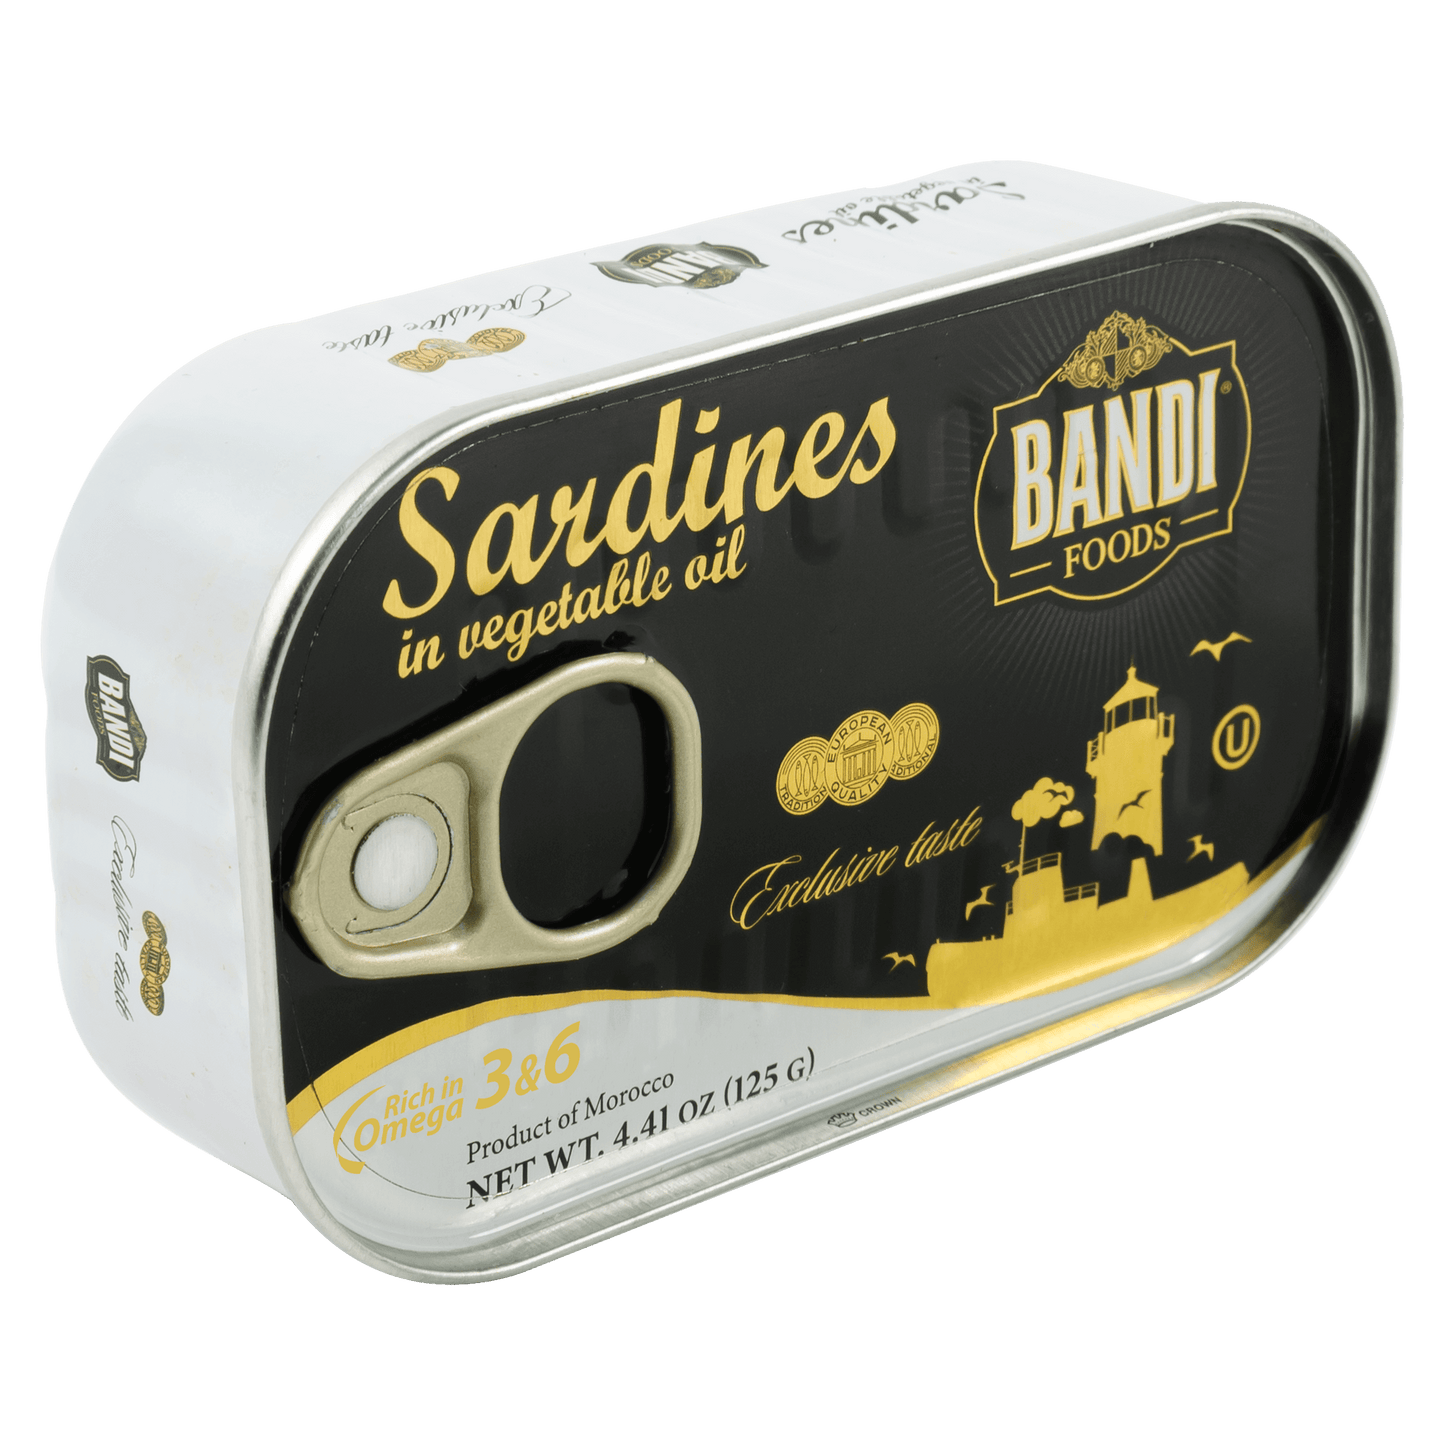 Sardines BANDI FOODS in vegetable Oil, 125g